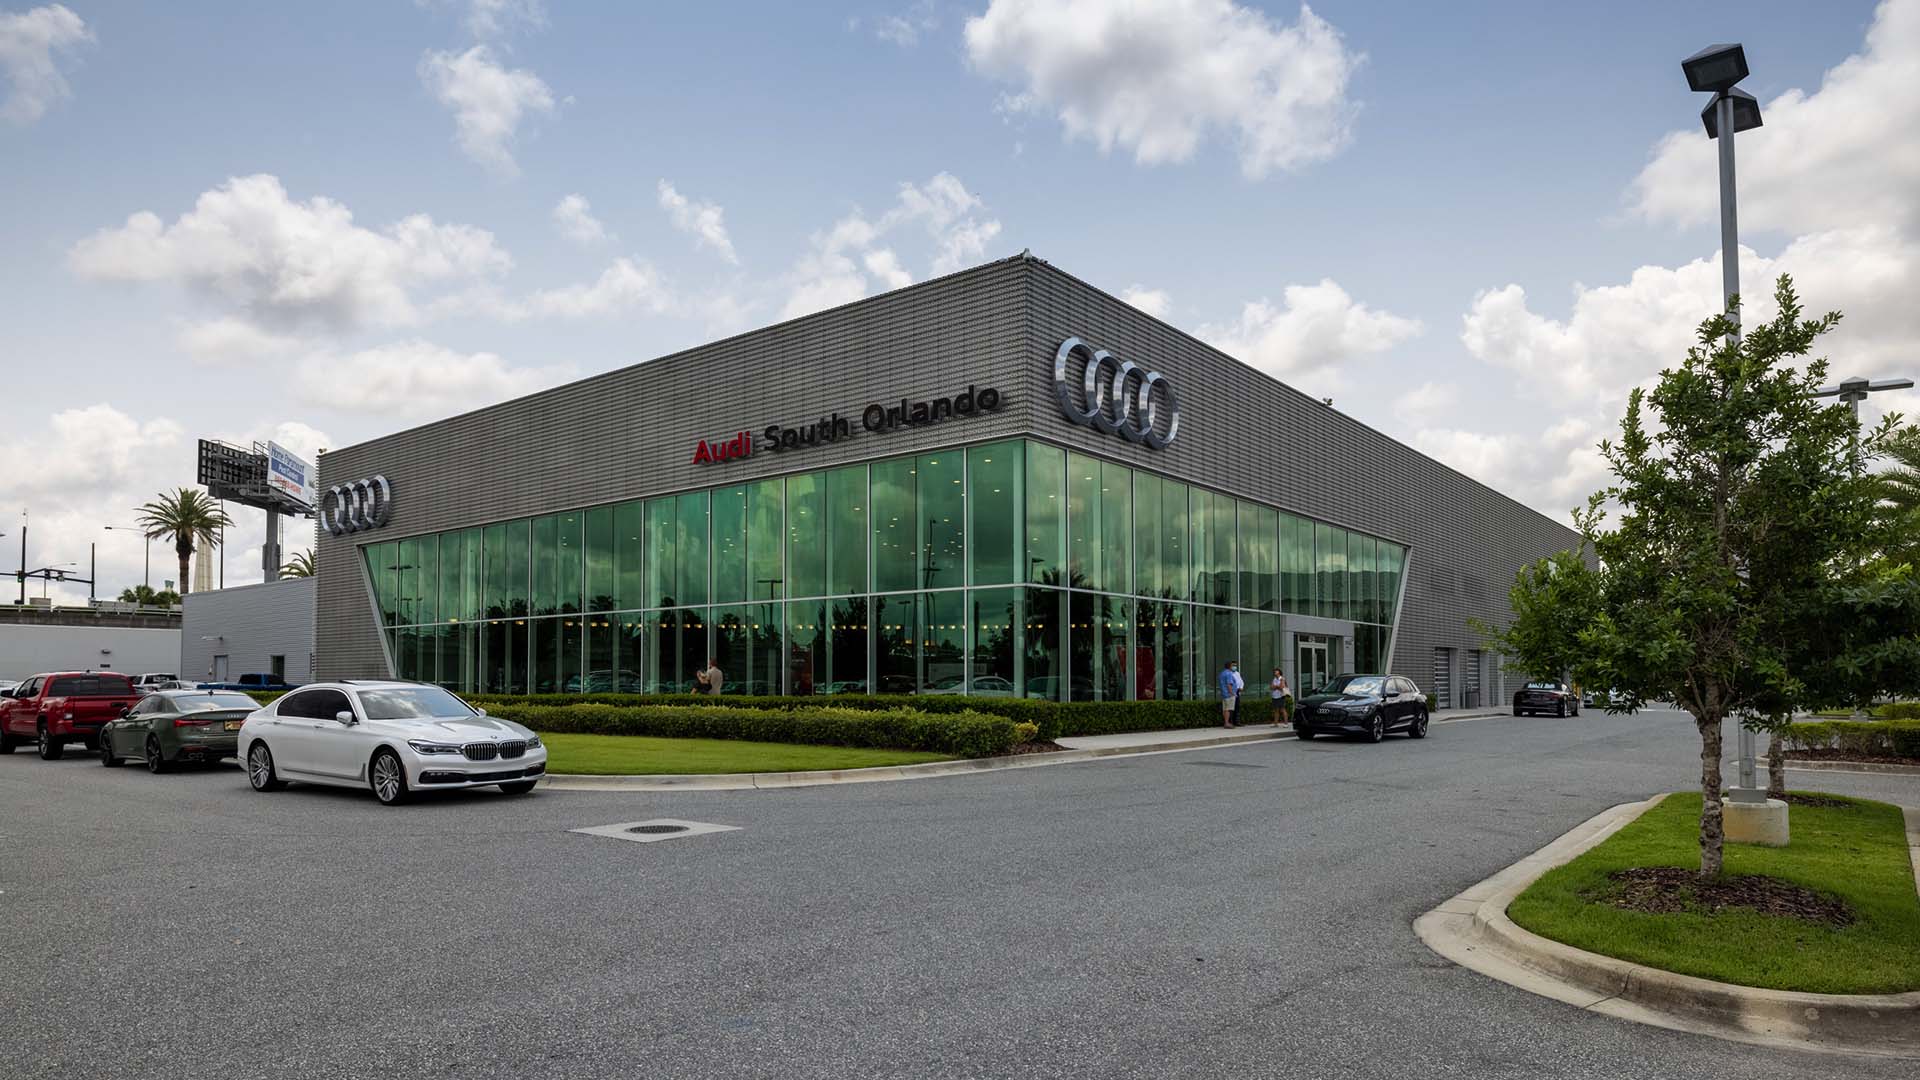 Exterior view of Audi South Orlando